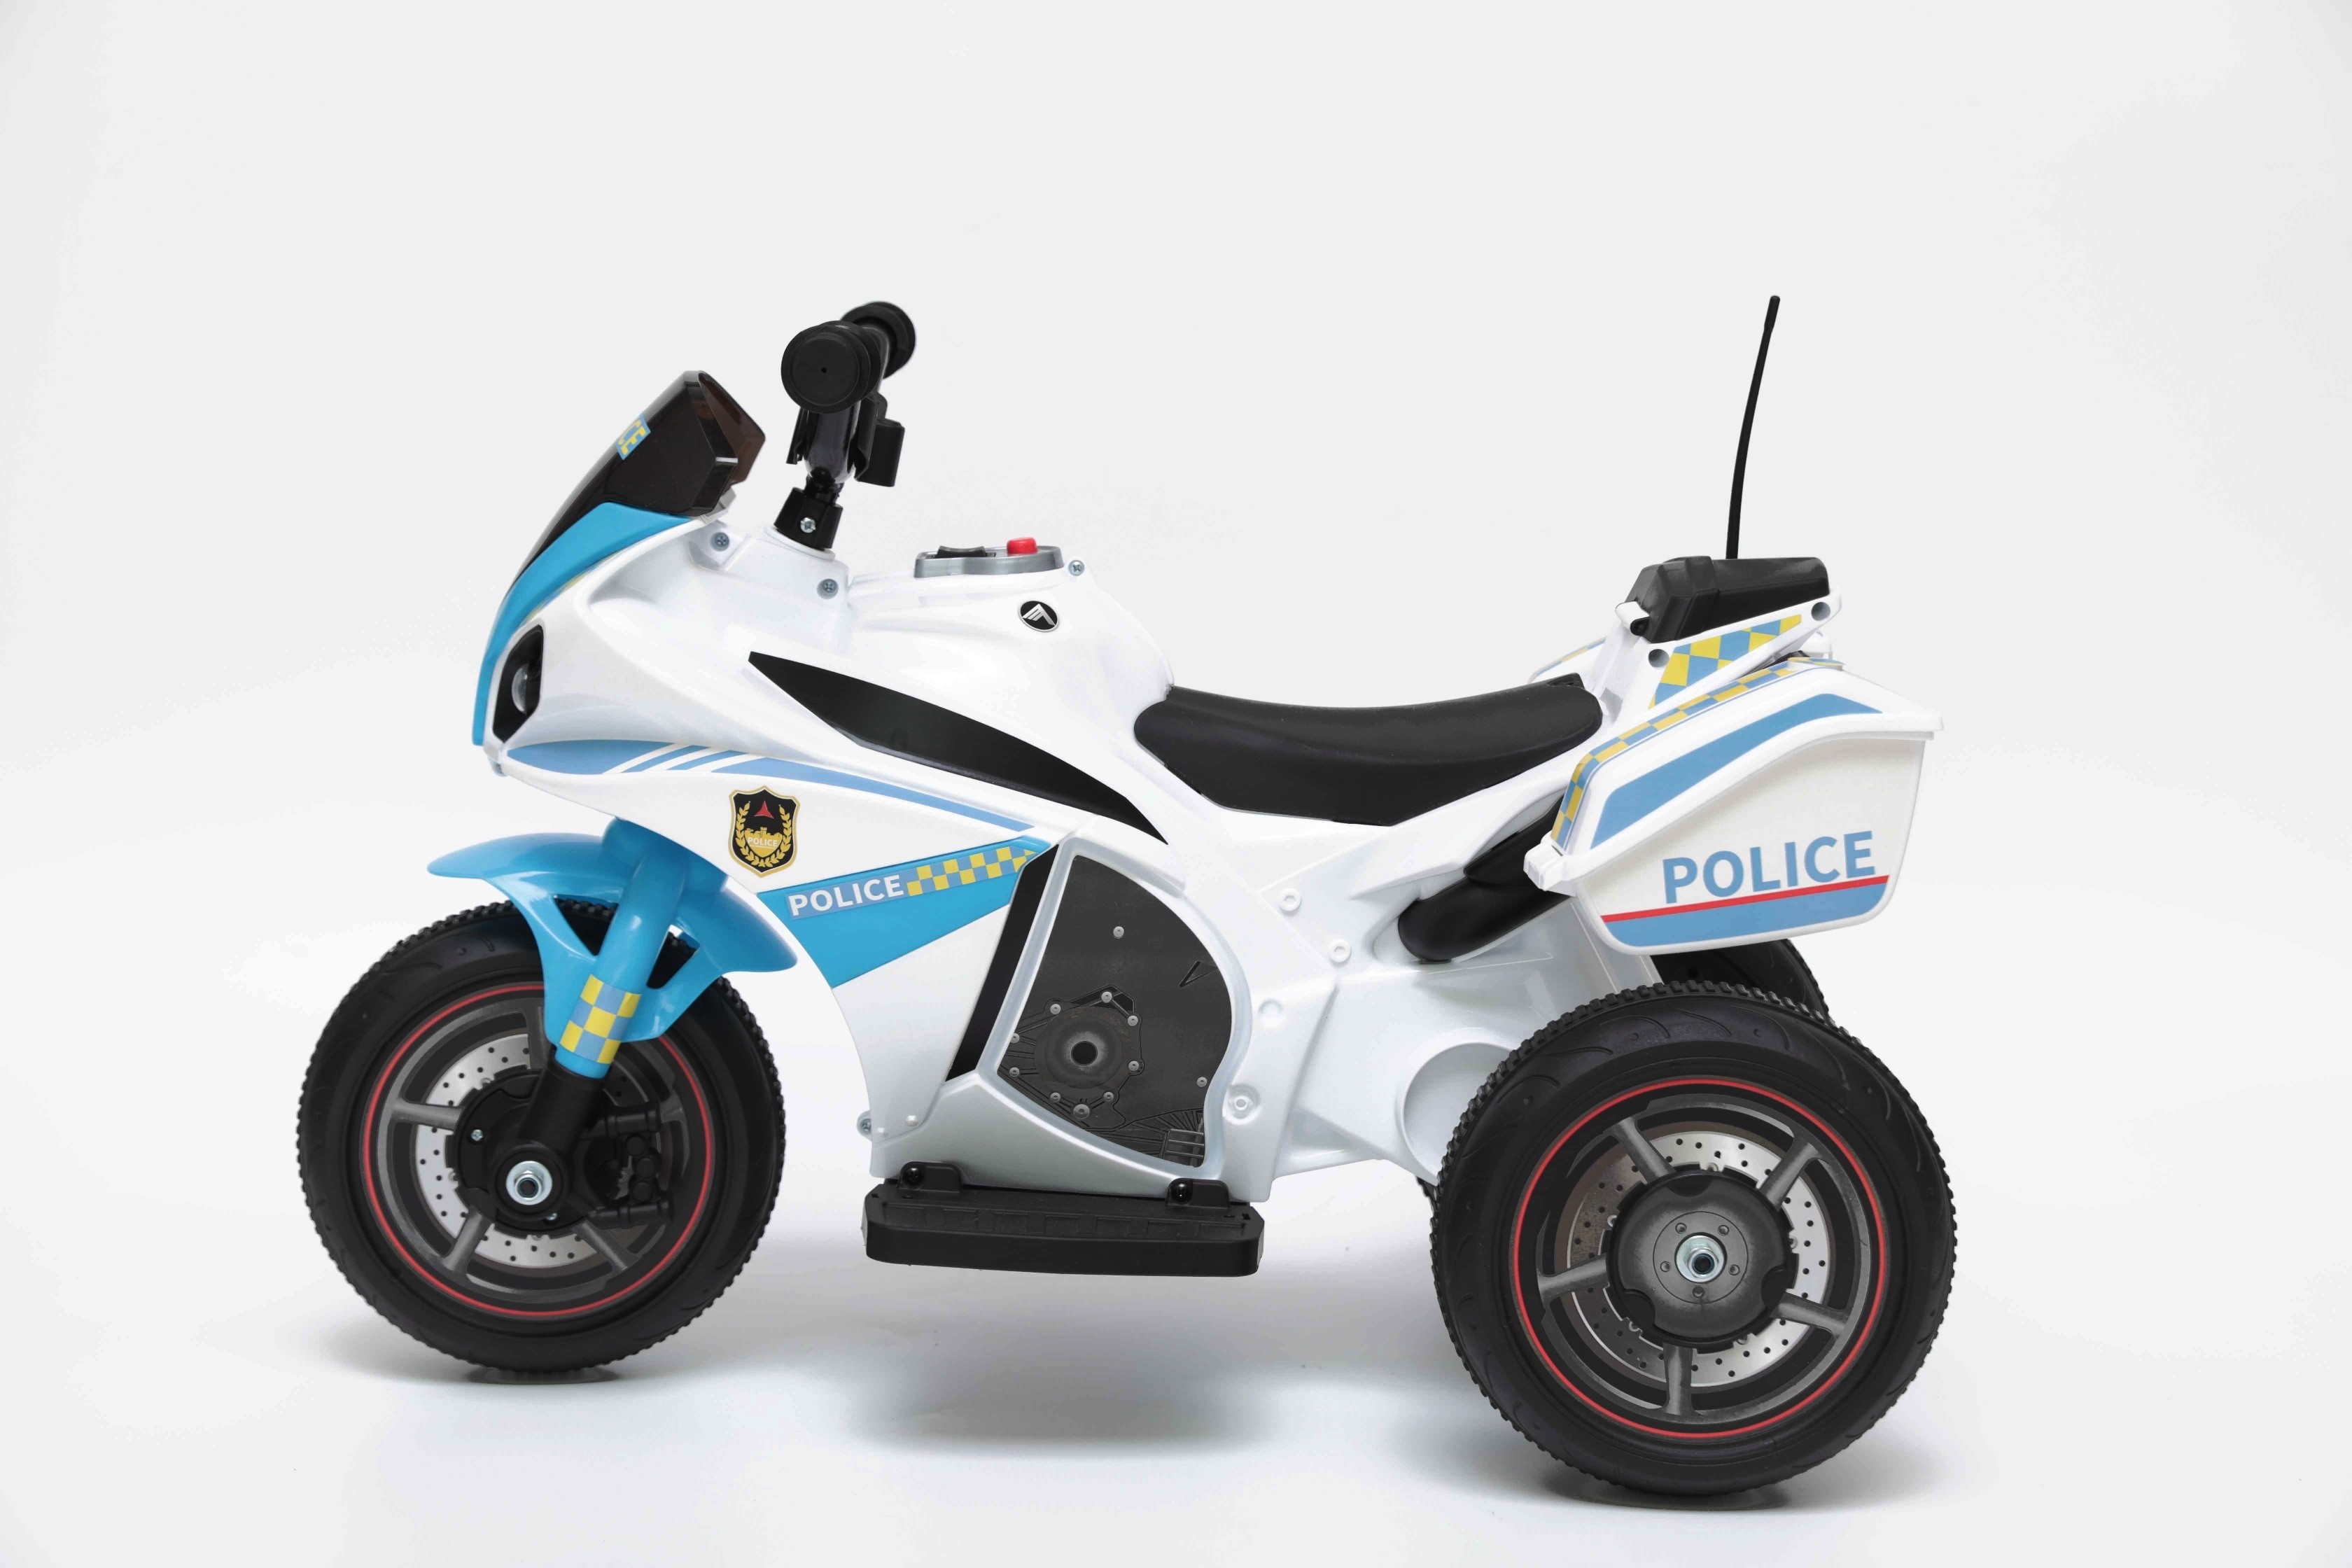 Bianco BAKAJI Toys Moto Polizia Motocicletta Elettrica Bambini Batteria 6V Ricaricabile Triciclo 3 Ruote Fari Funzionanti Sirena con Luci e Suoni Dimensione 69 x 45 x 39 cm